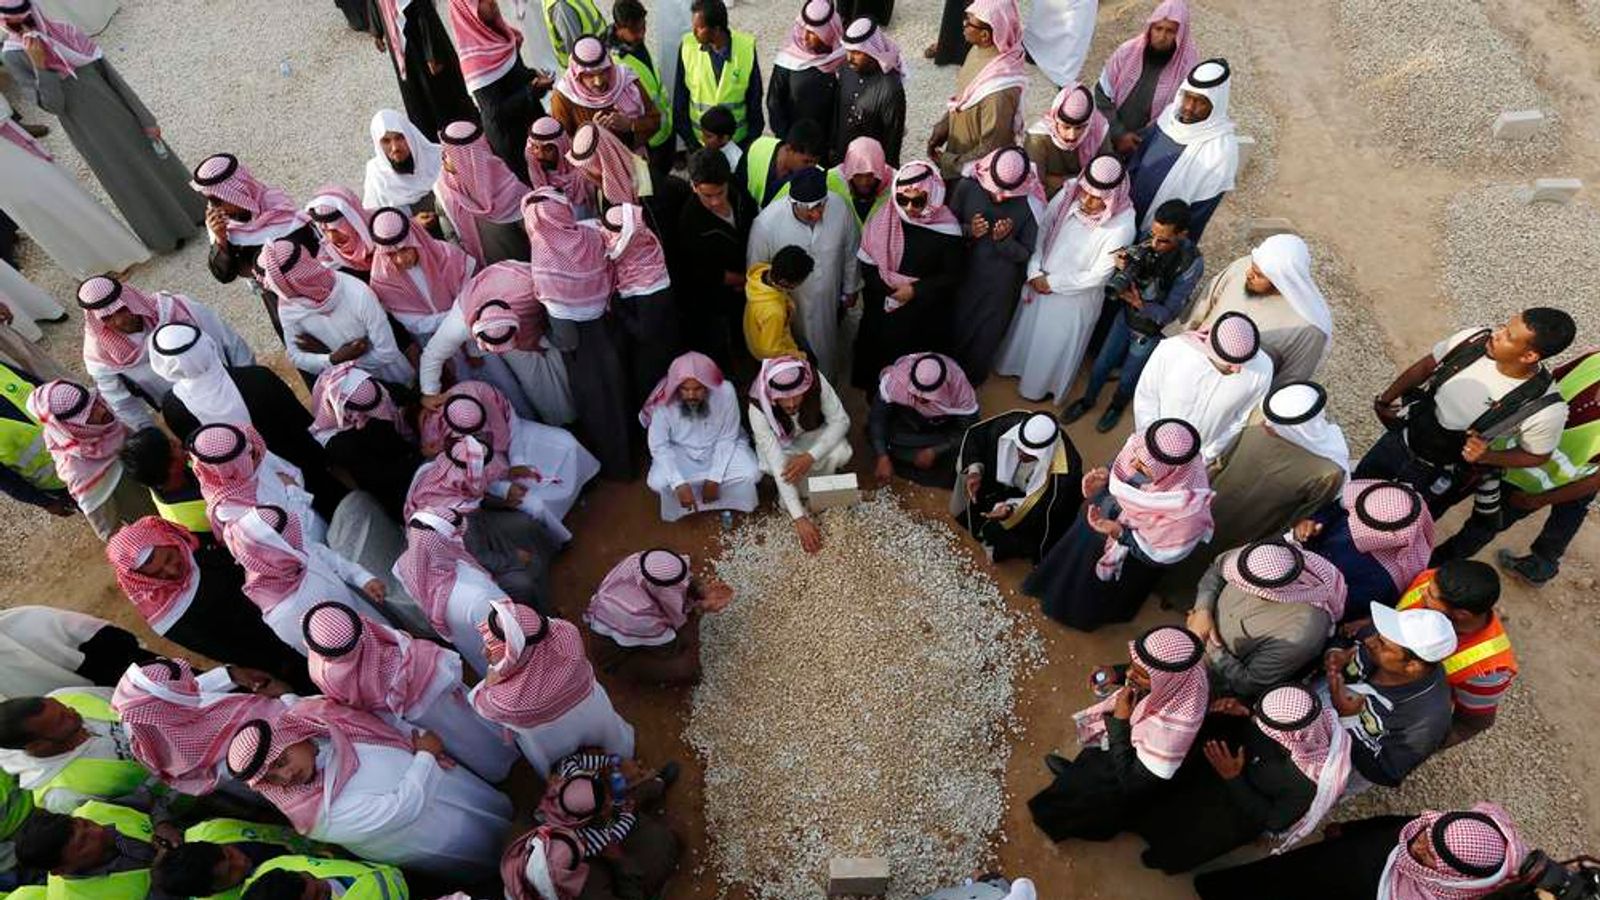 могила короля саудовской аравии